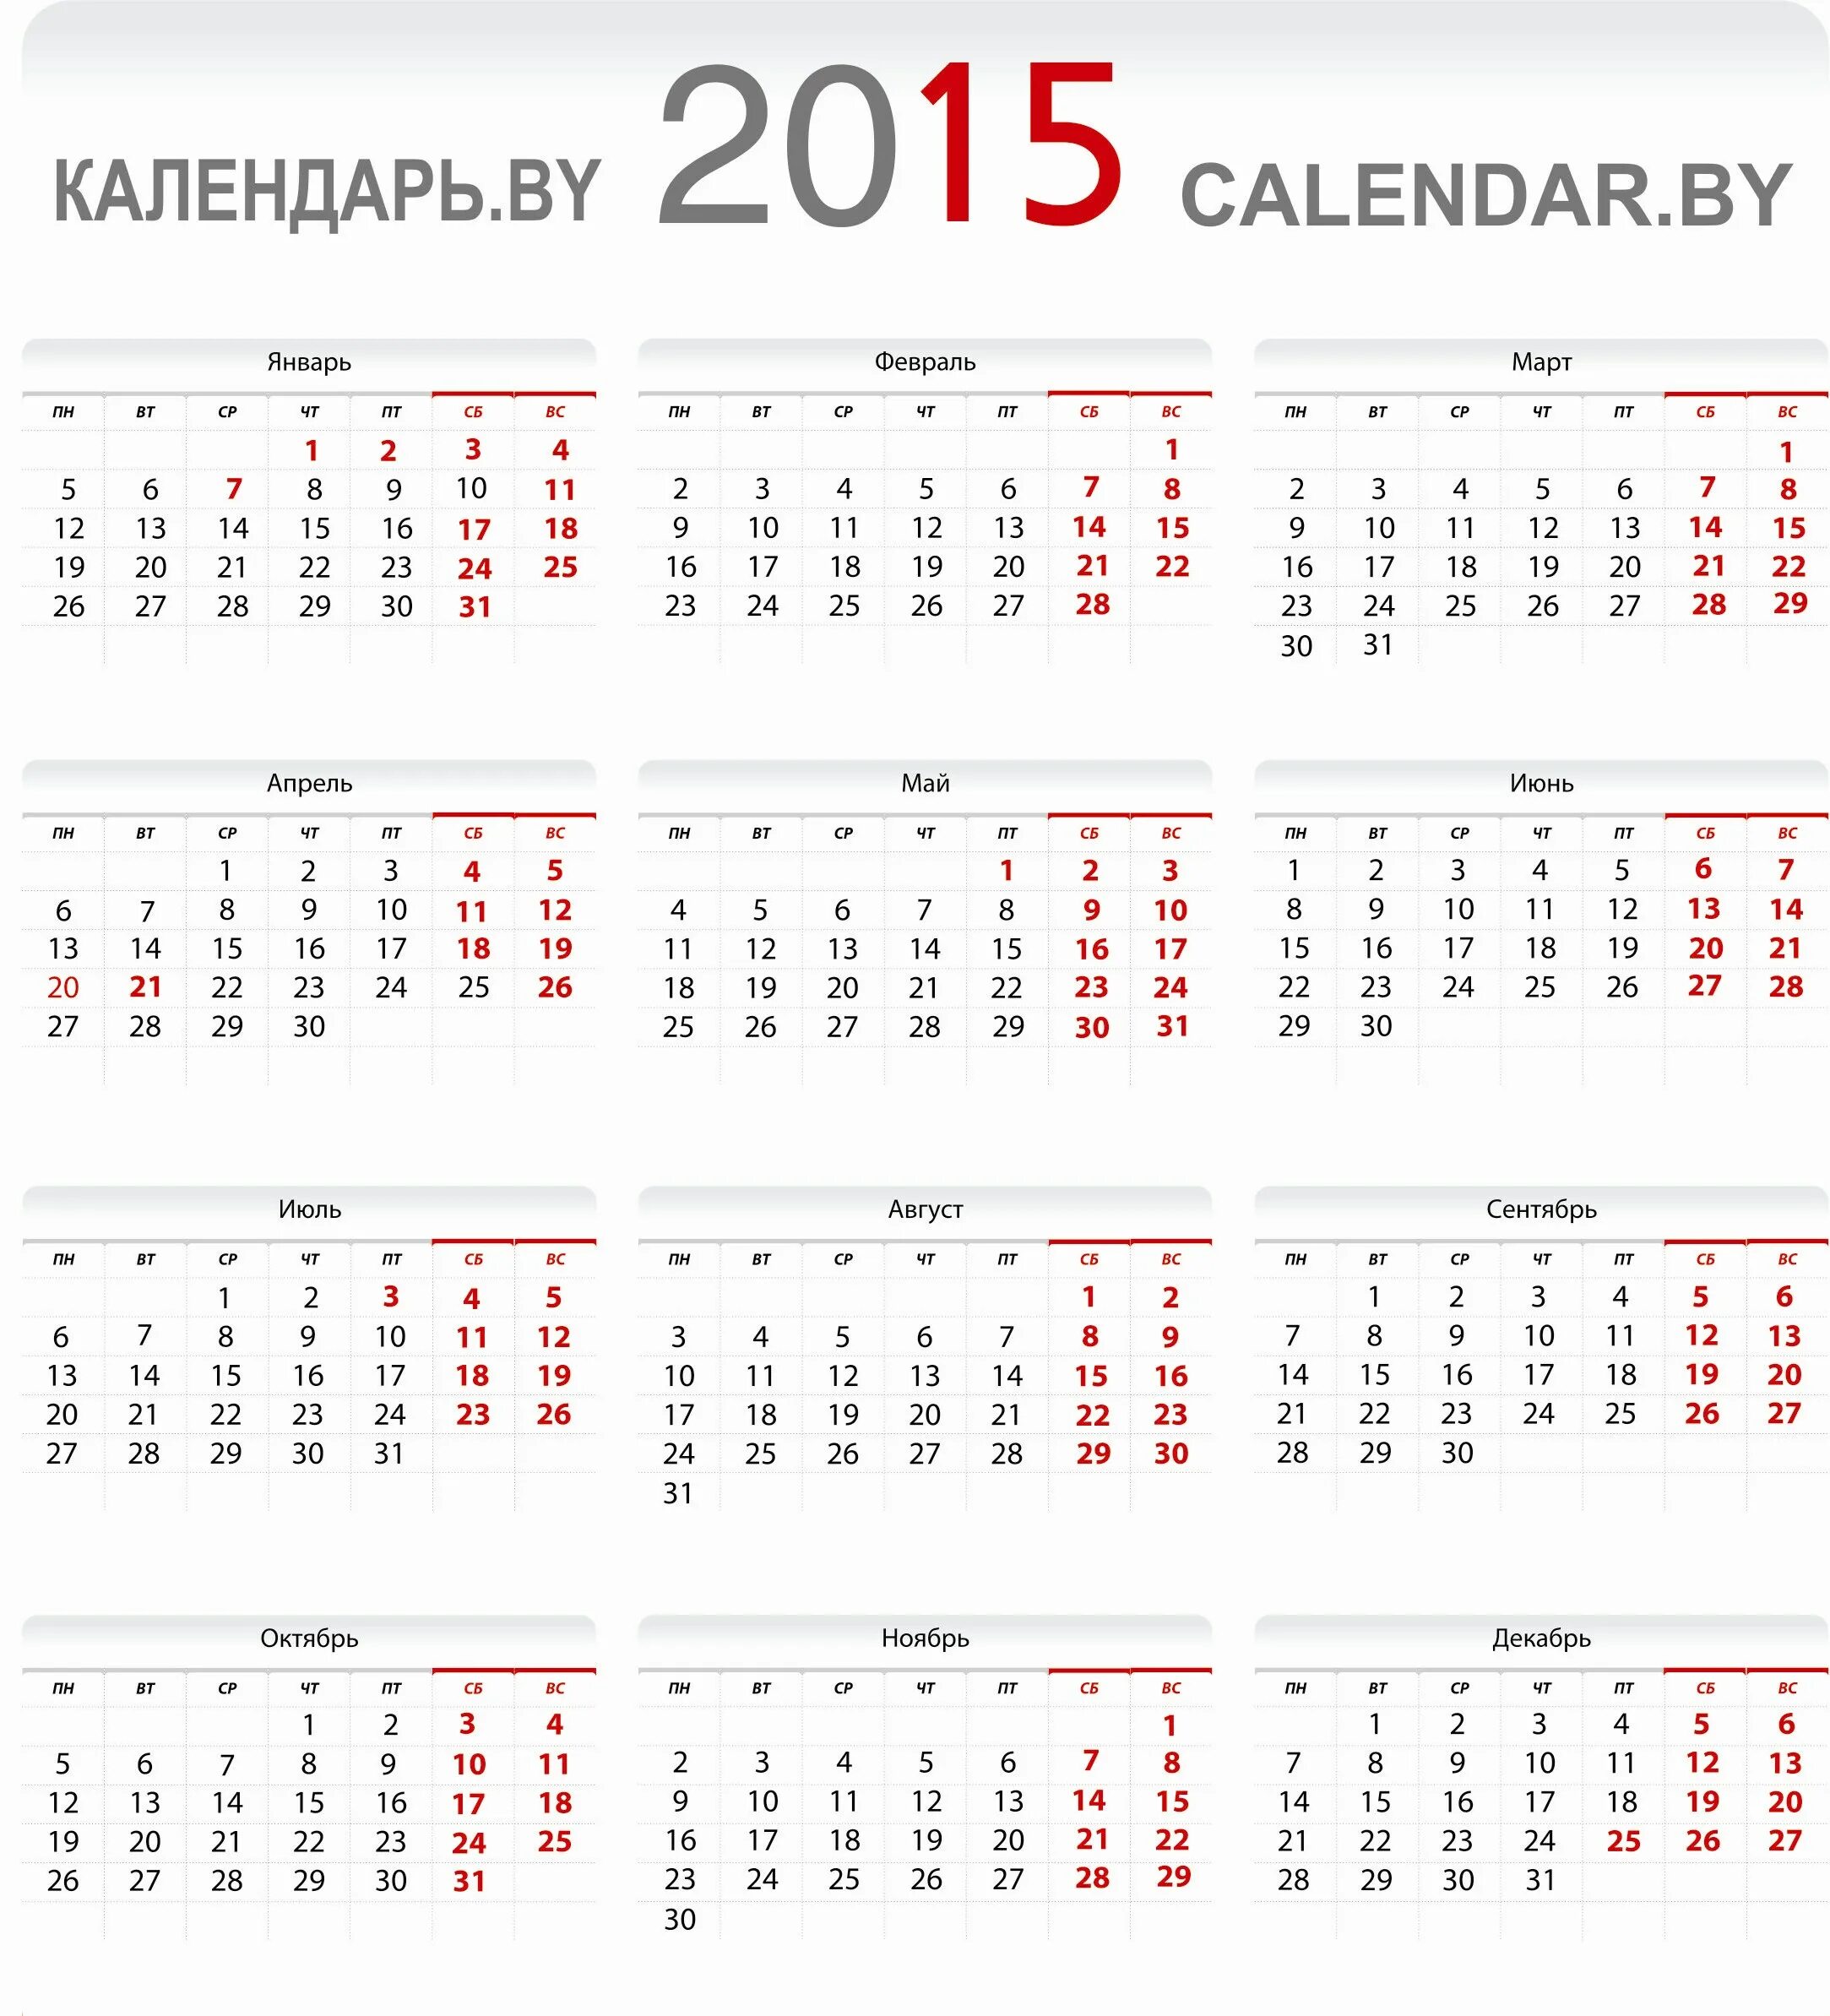 Календарь 2015. Календарь на 2015 год. Календарь 2015г. Календарь 2015 года по месяцам. 15 рабочих дней в календарные